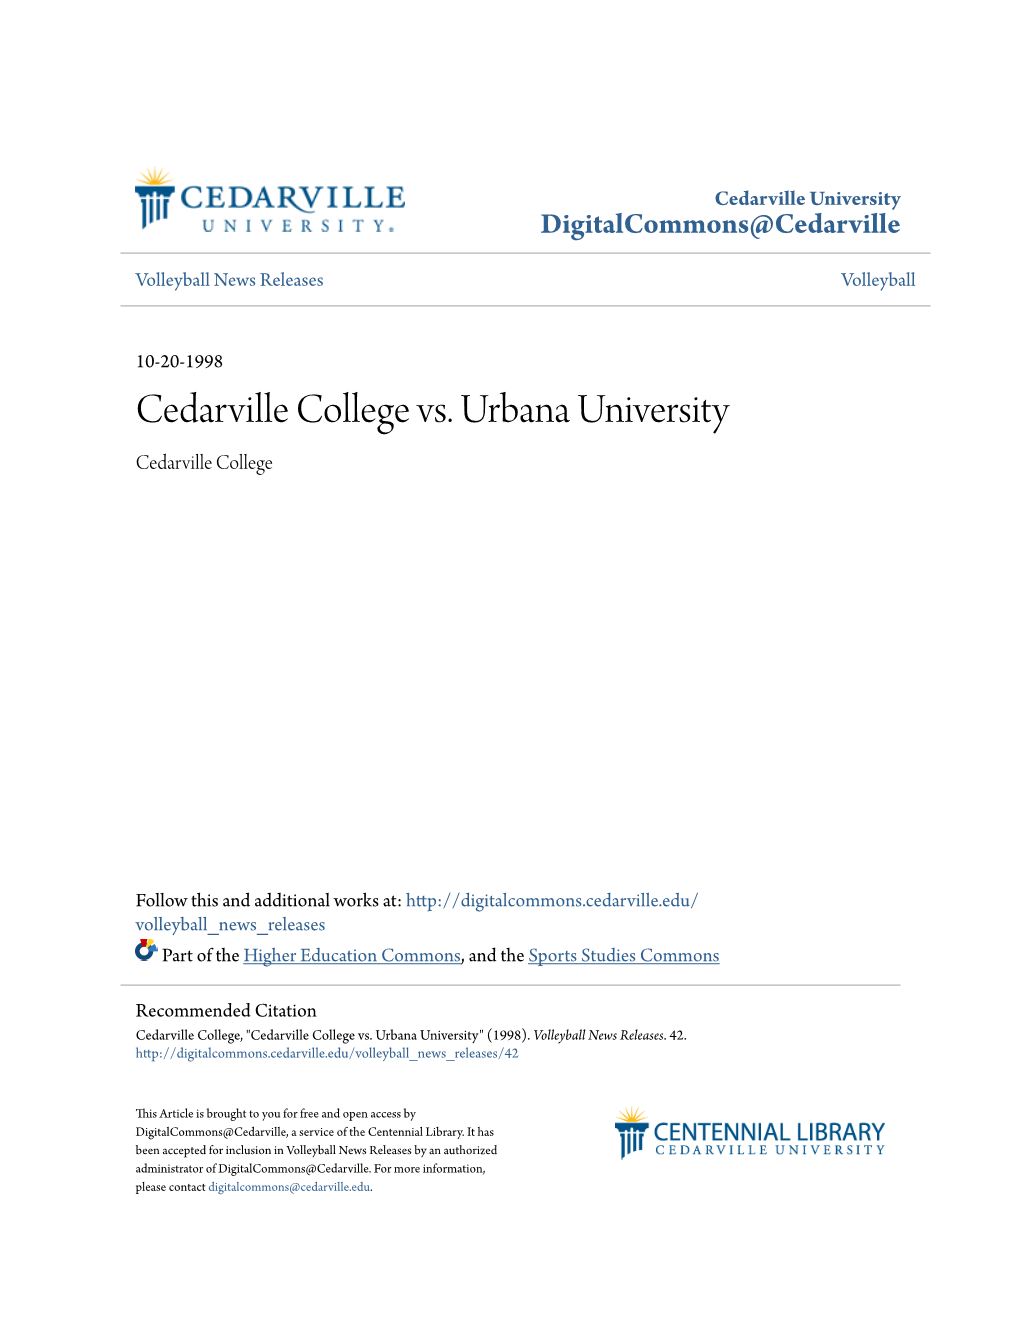 Cedarville College Vs. Urbana University Cedarville College